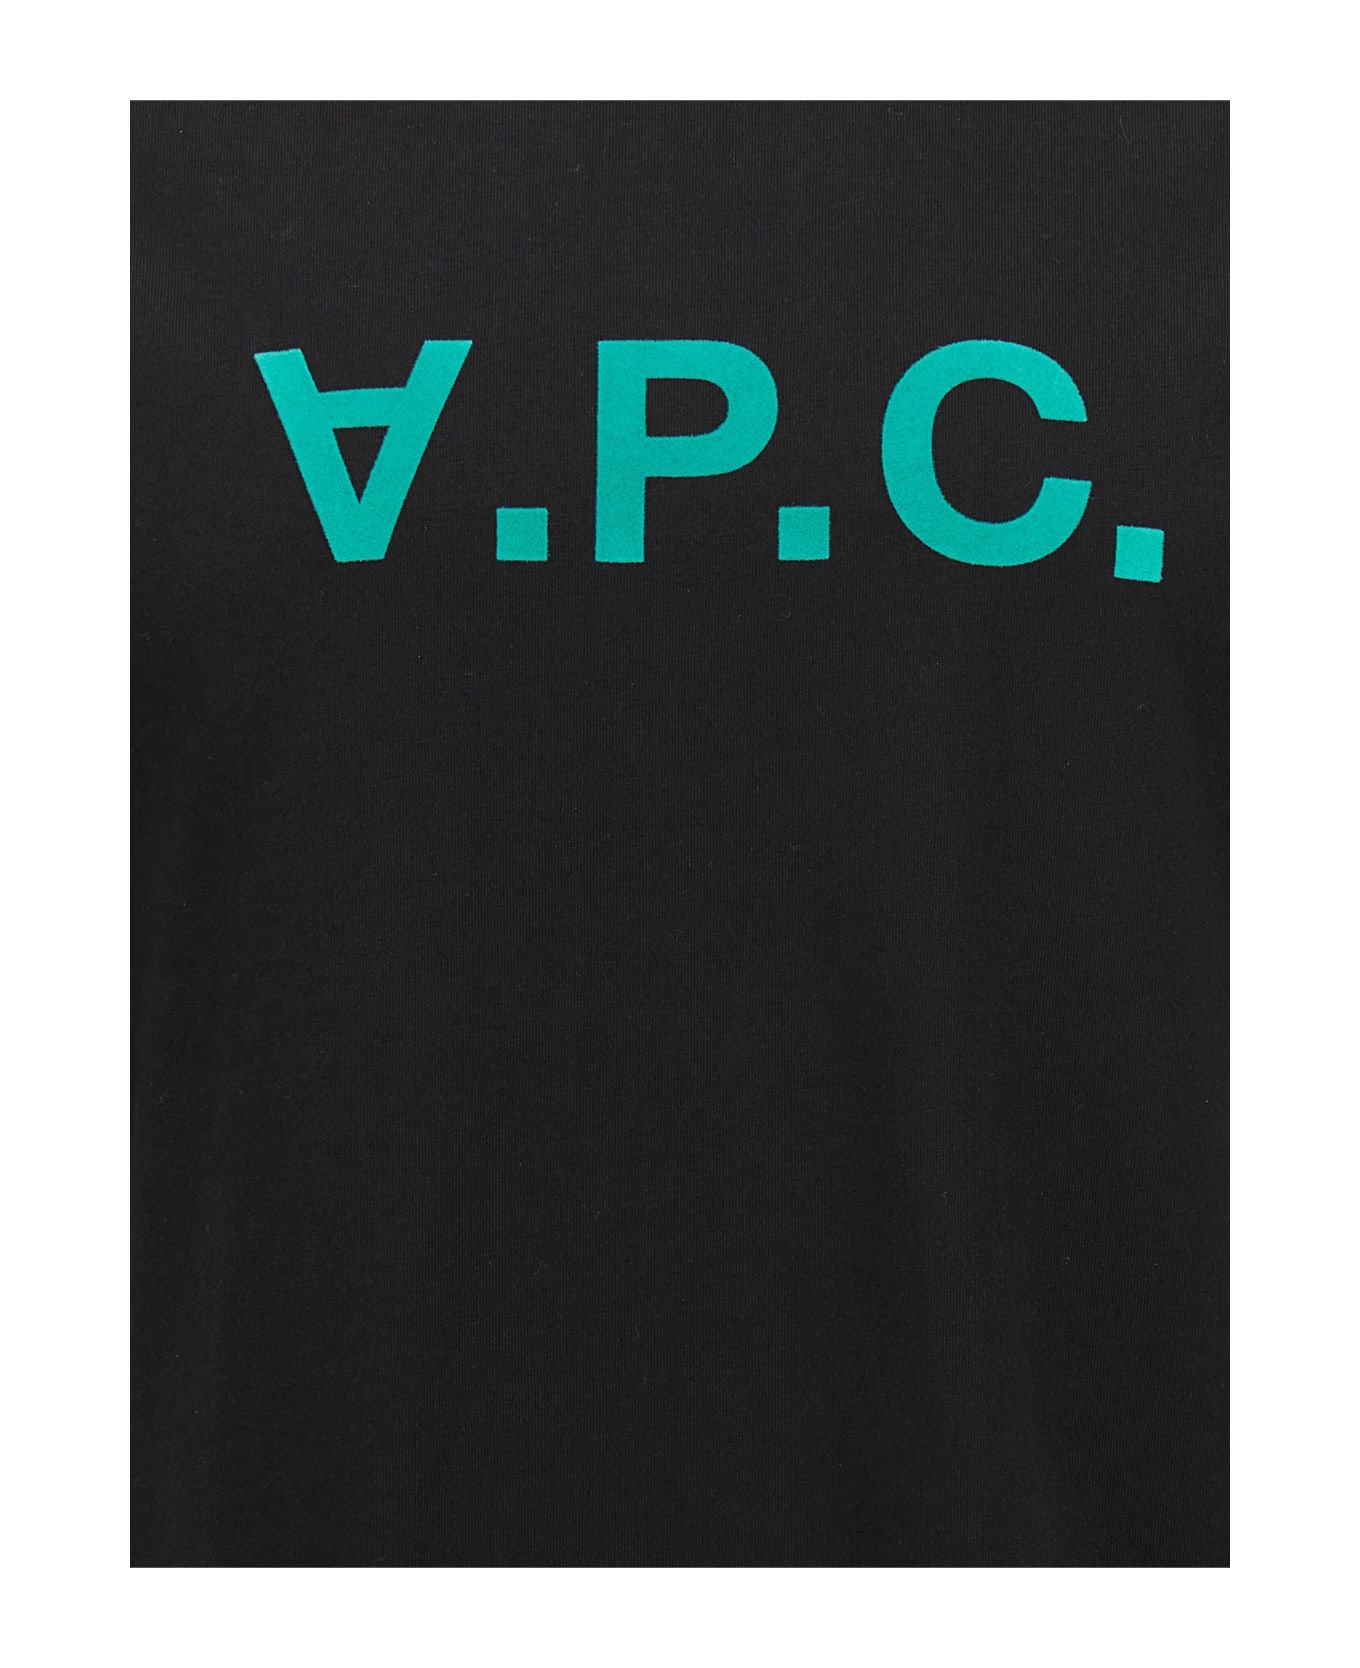 A.P.C. Vpc Logo Printed T-shirt - Black シャツ